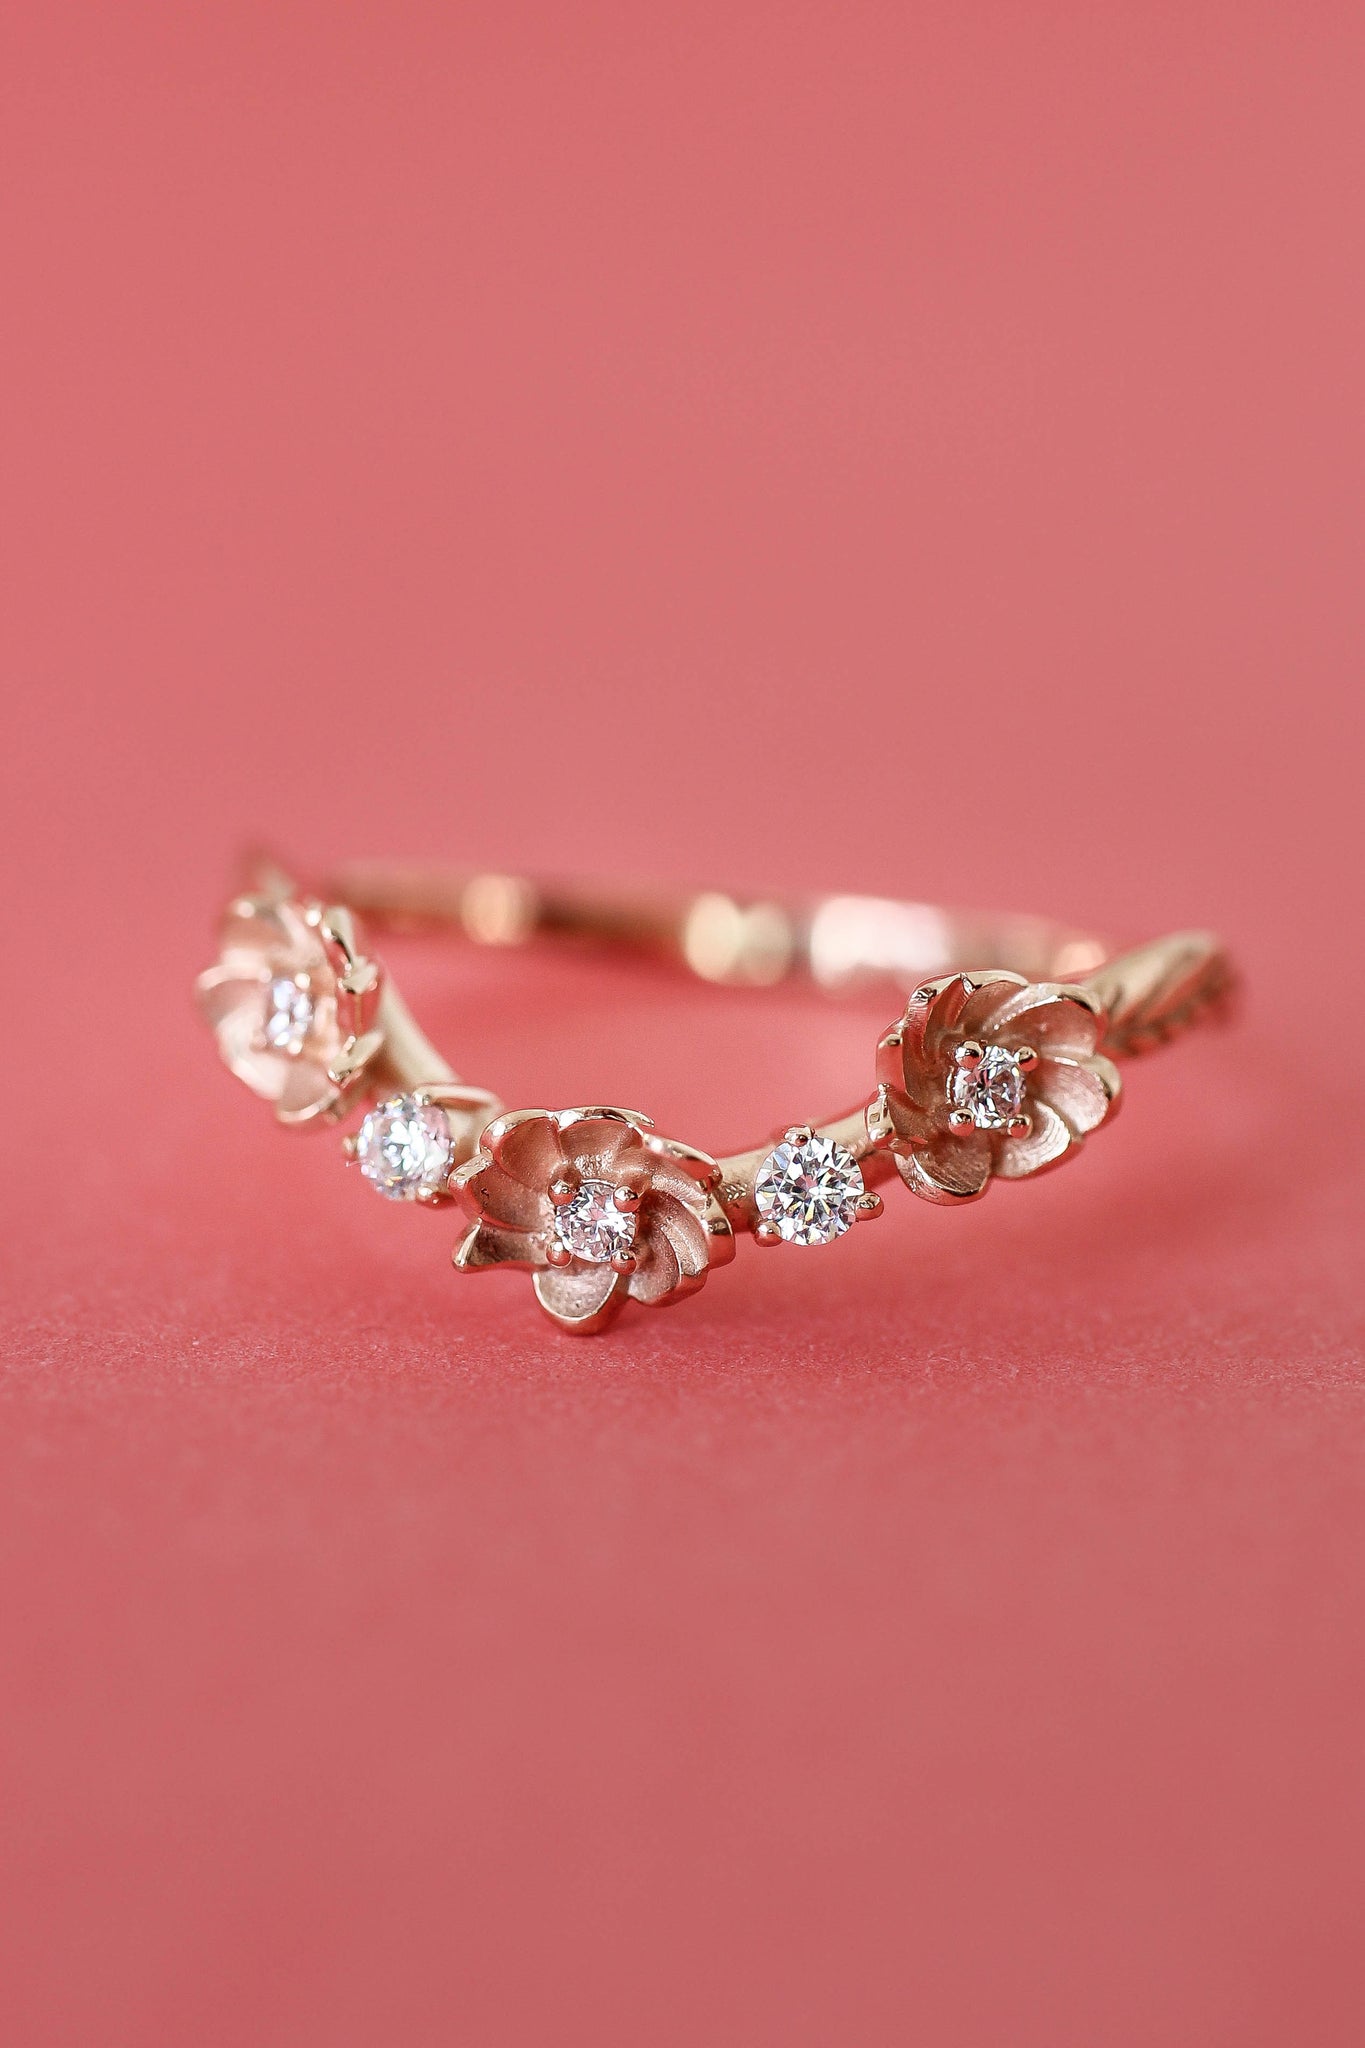 Curved flower wedding band, diamond ring - Eden Garden Jewelry™